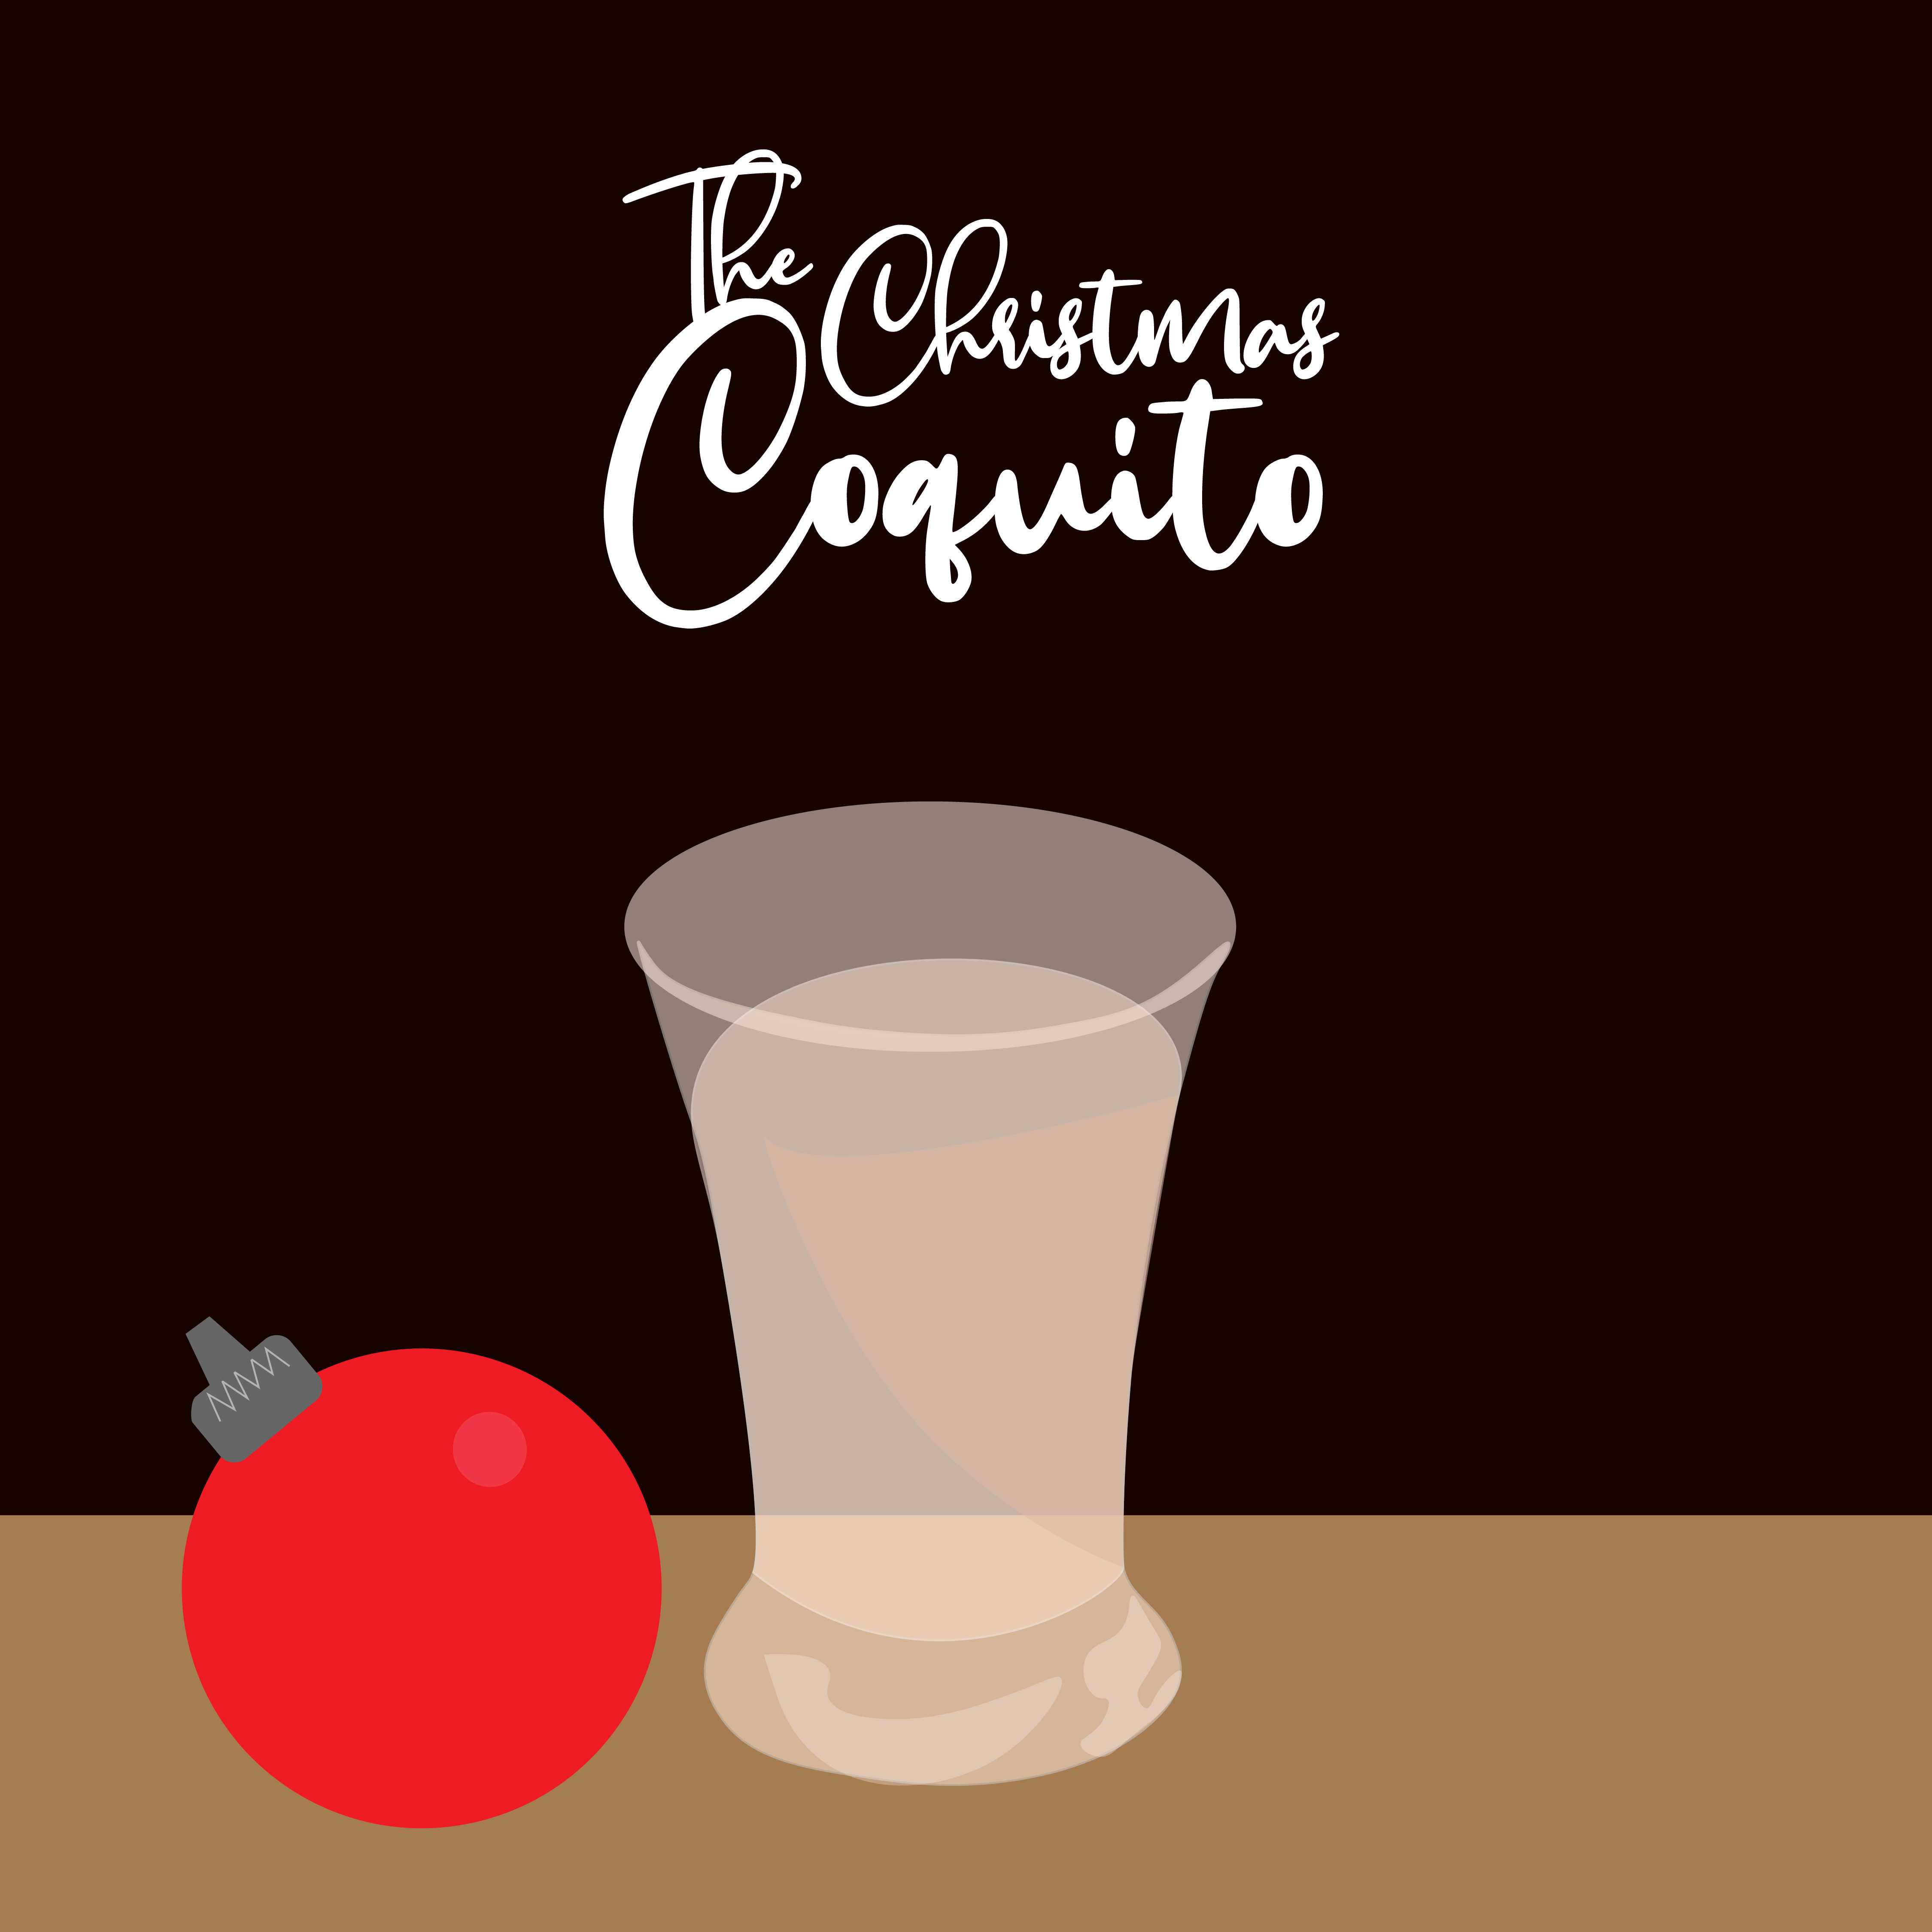 The Chiristmas Coquito